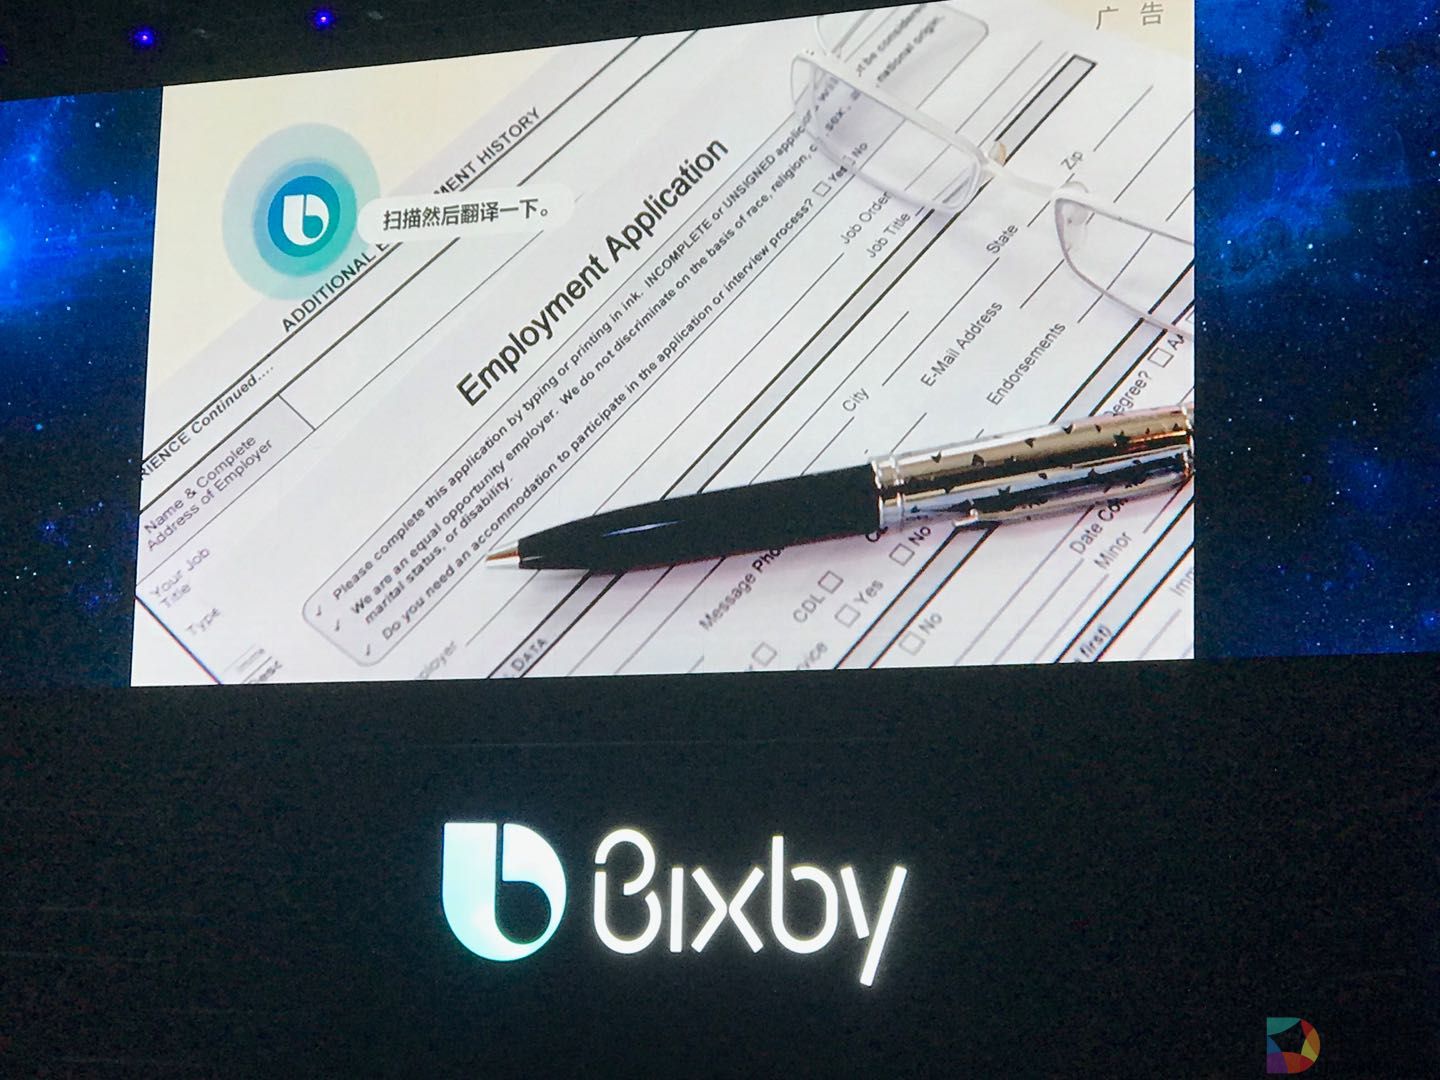 三星发布人工智能平台Bixby中文版 希望为中国科技产业发展出力